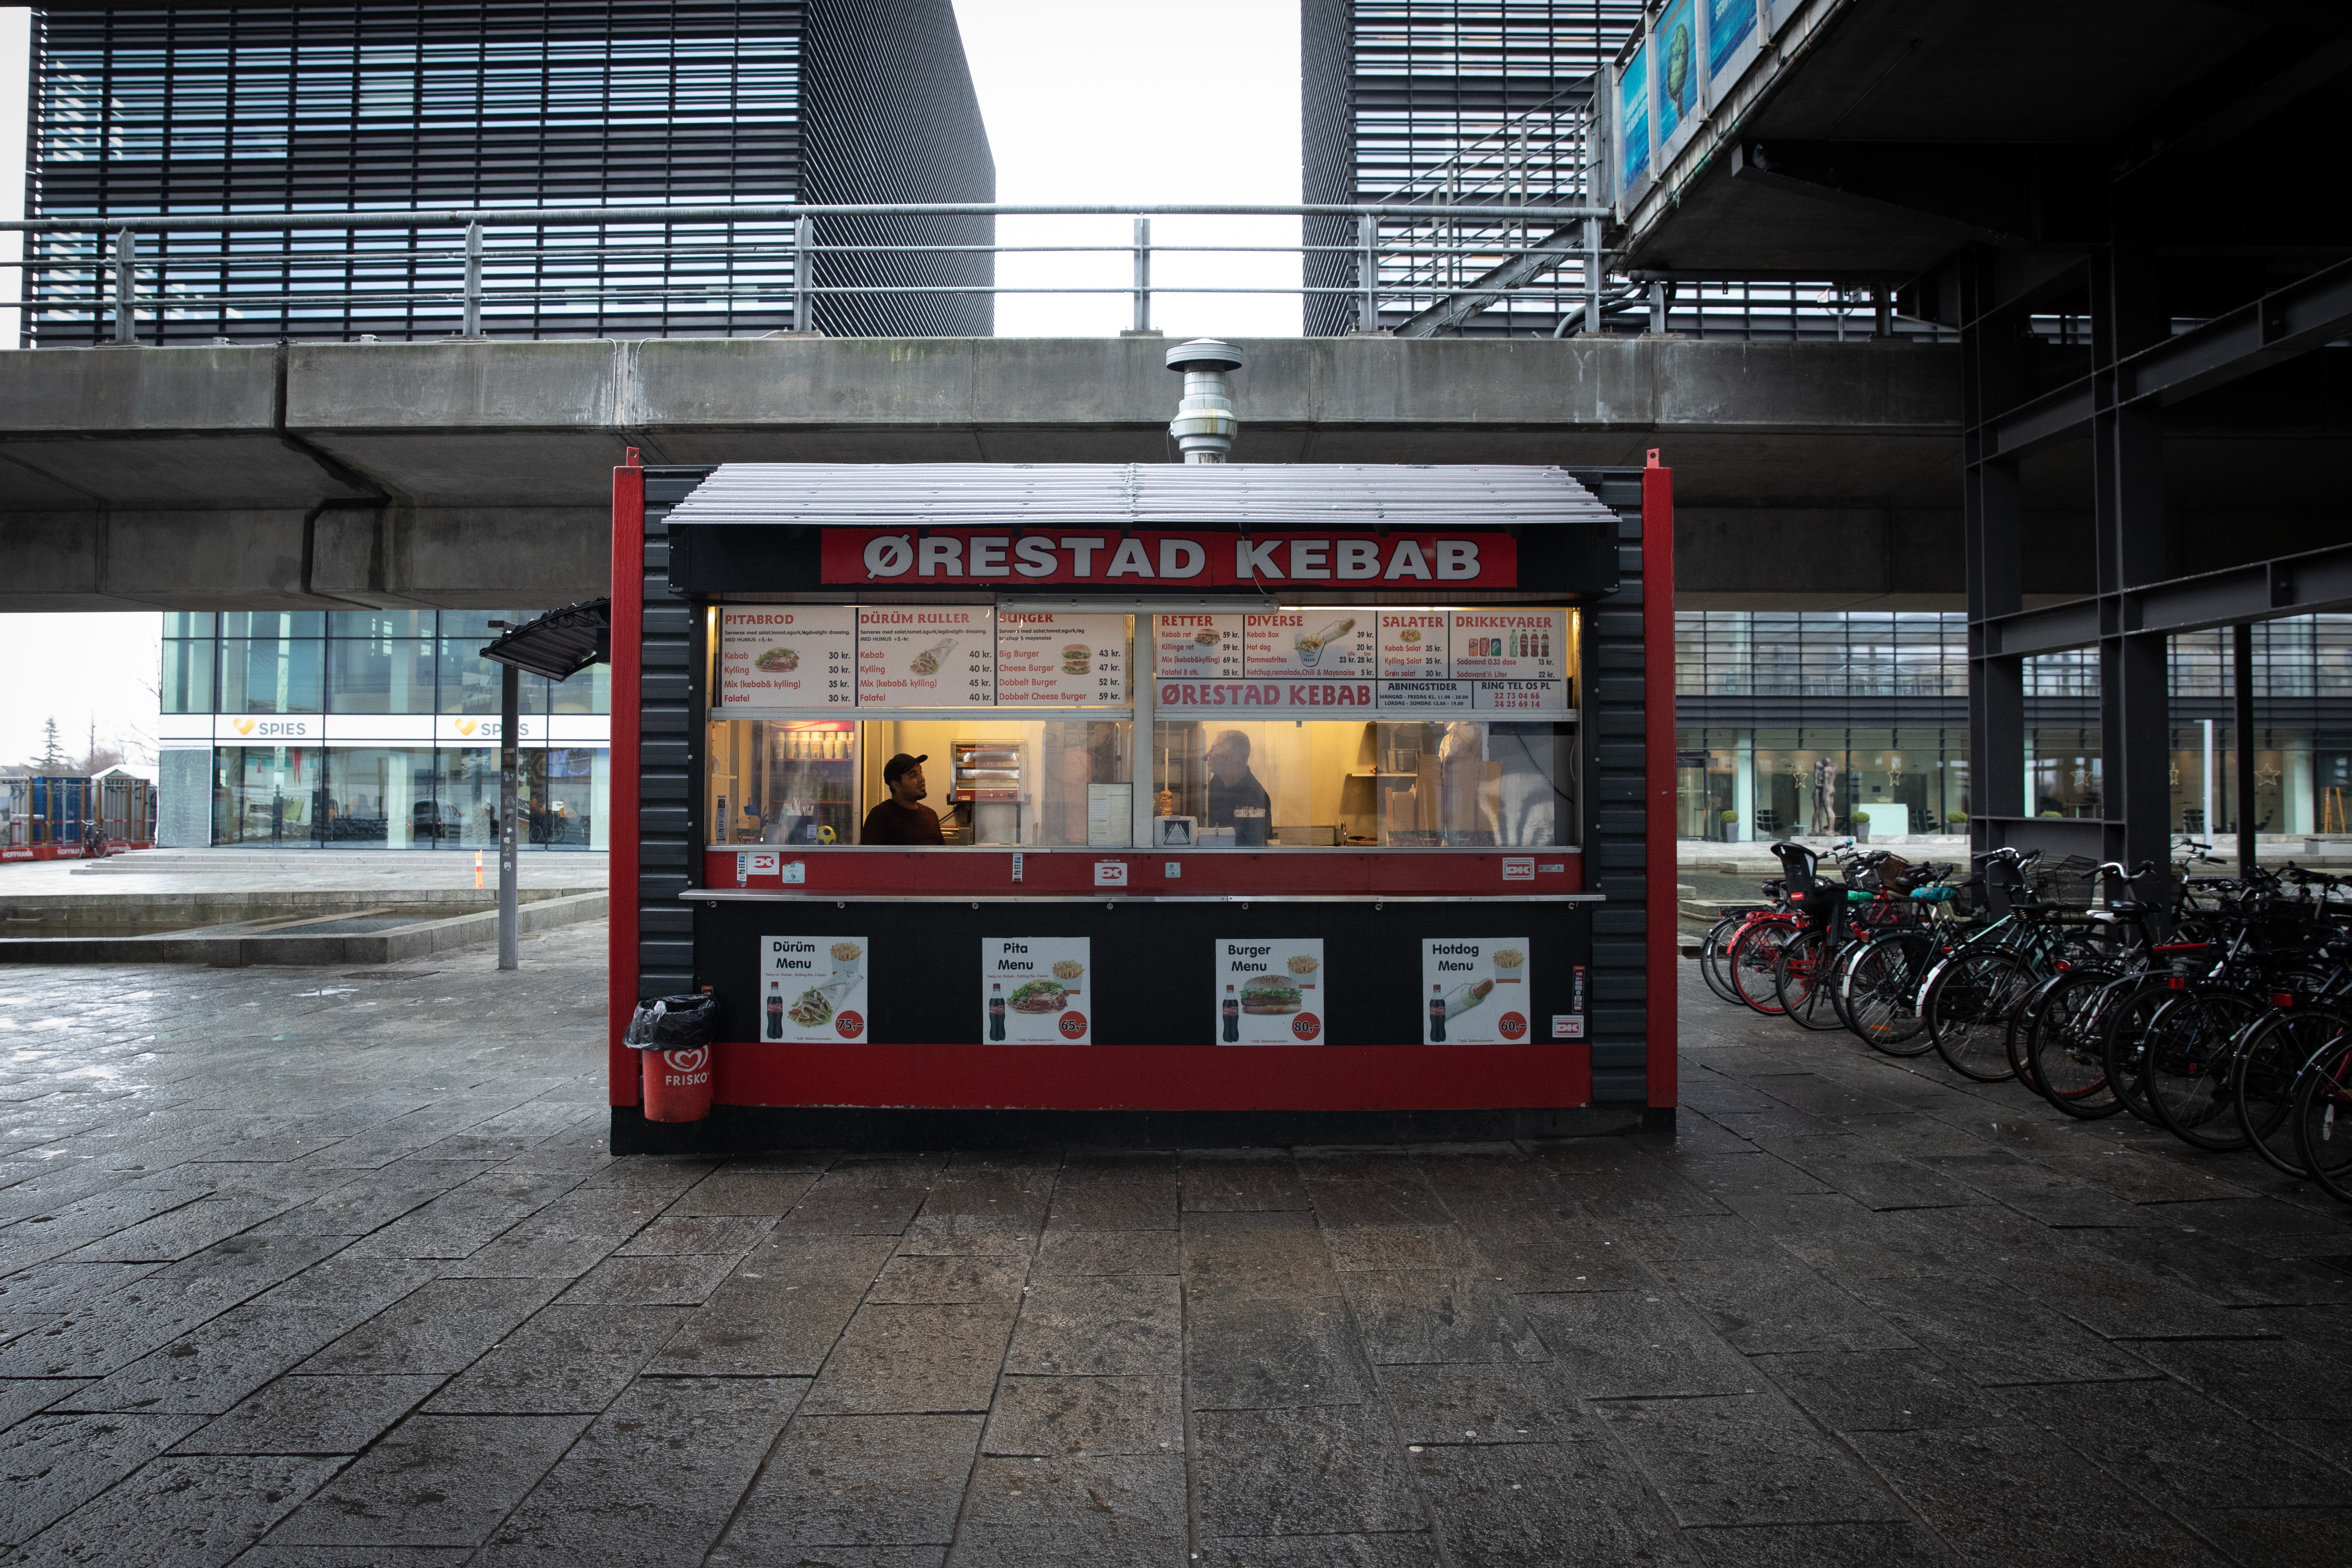 Fra til Amager: En hyldest til dansk stationskebab